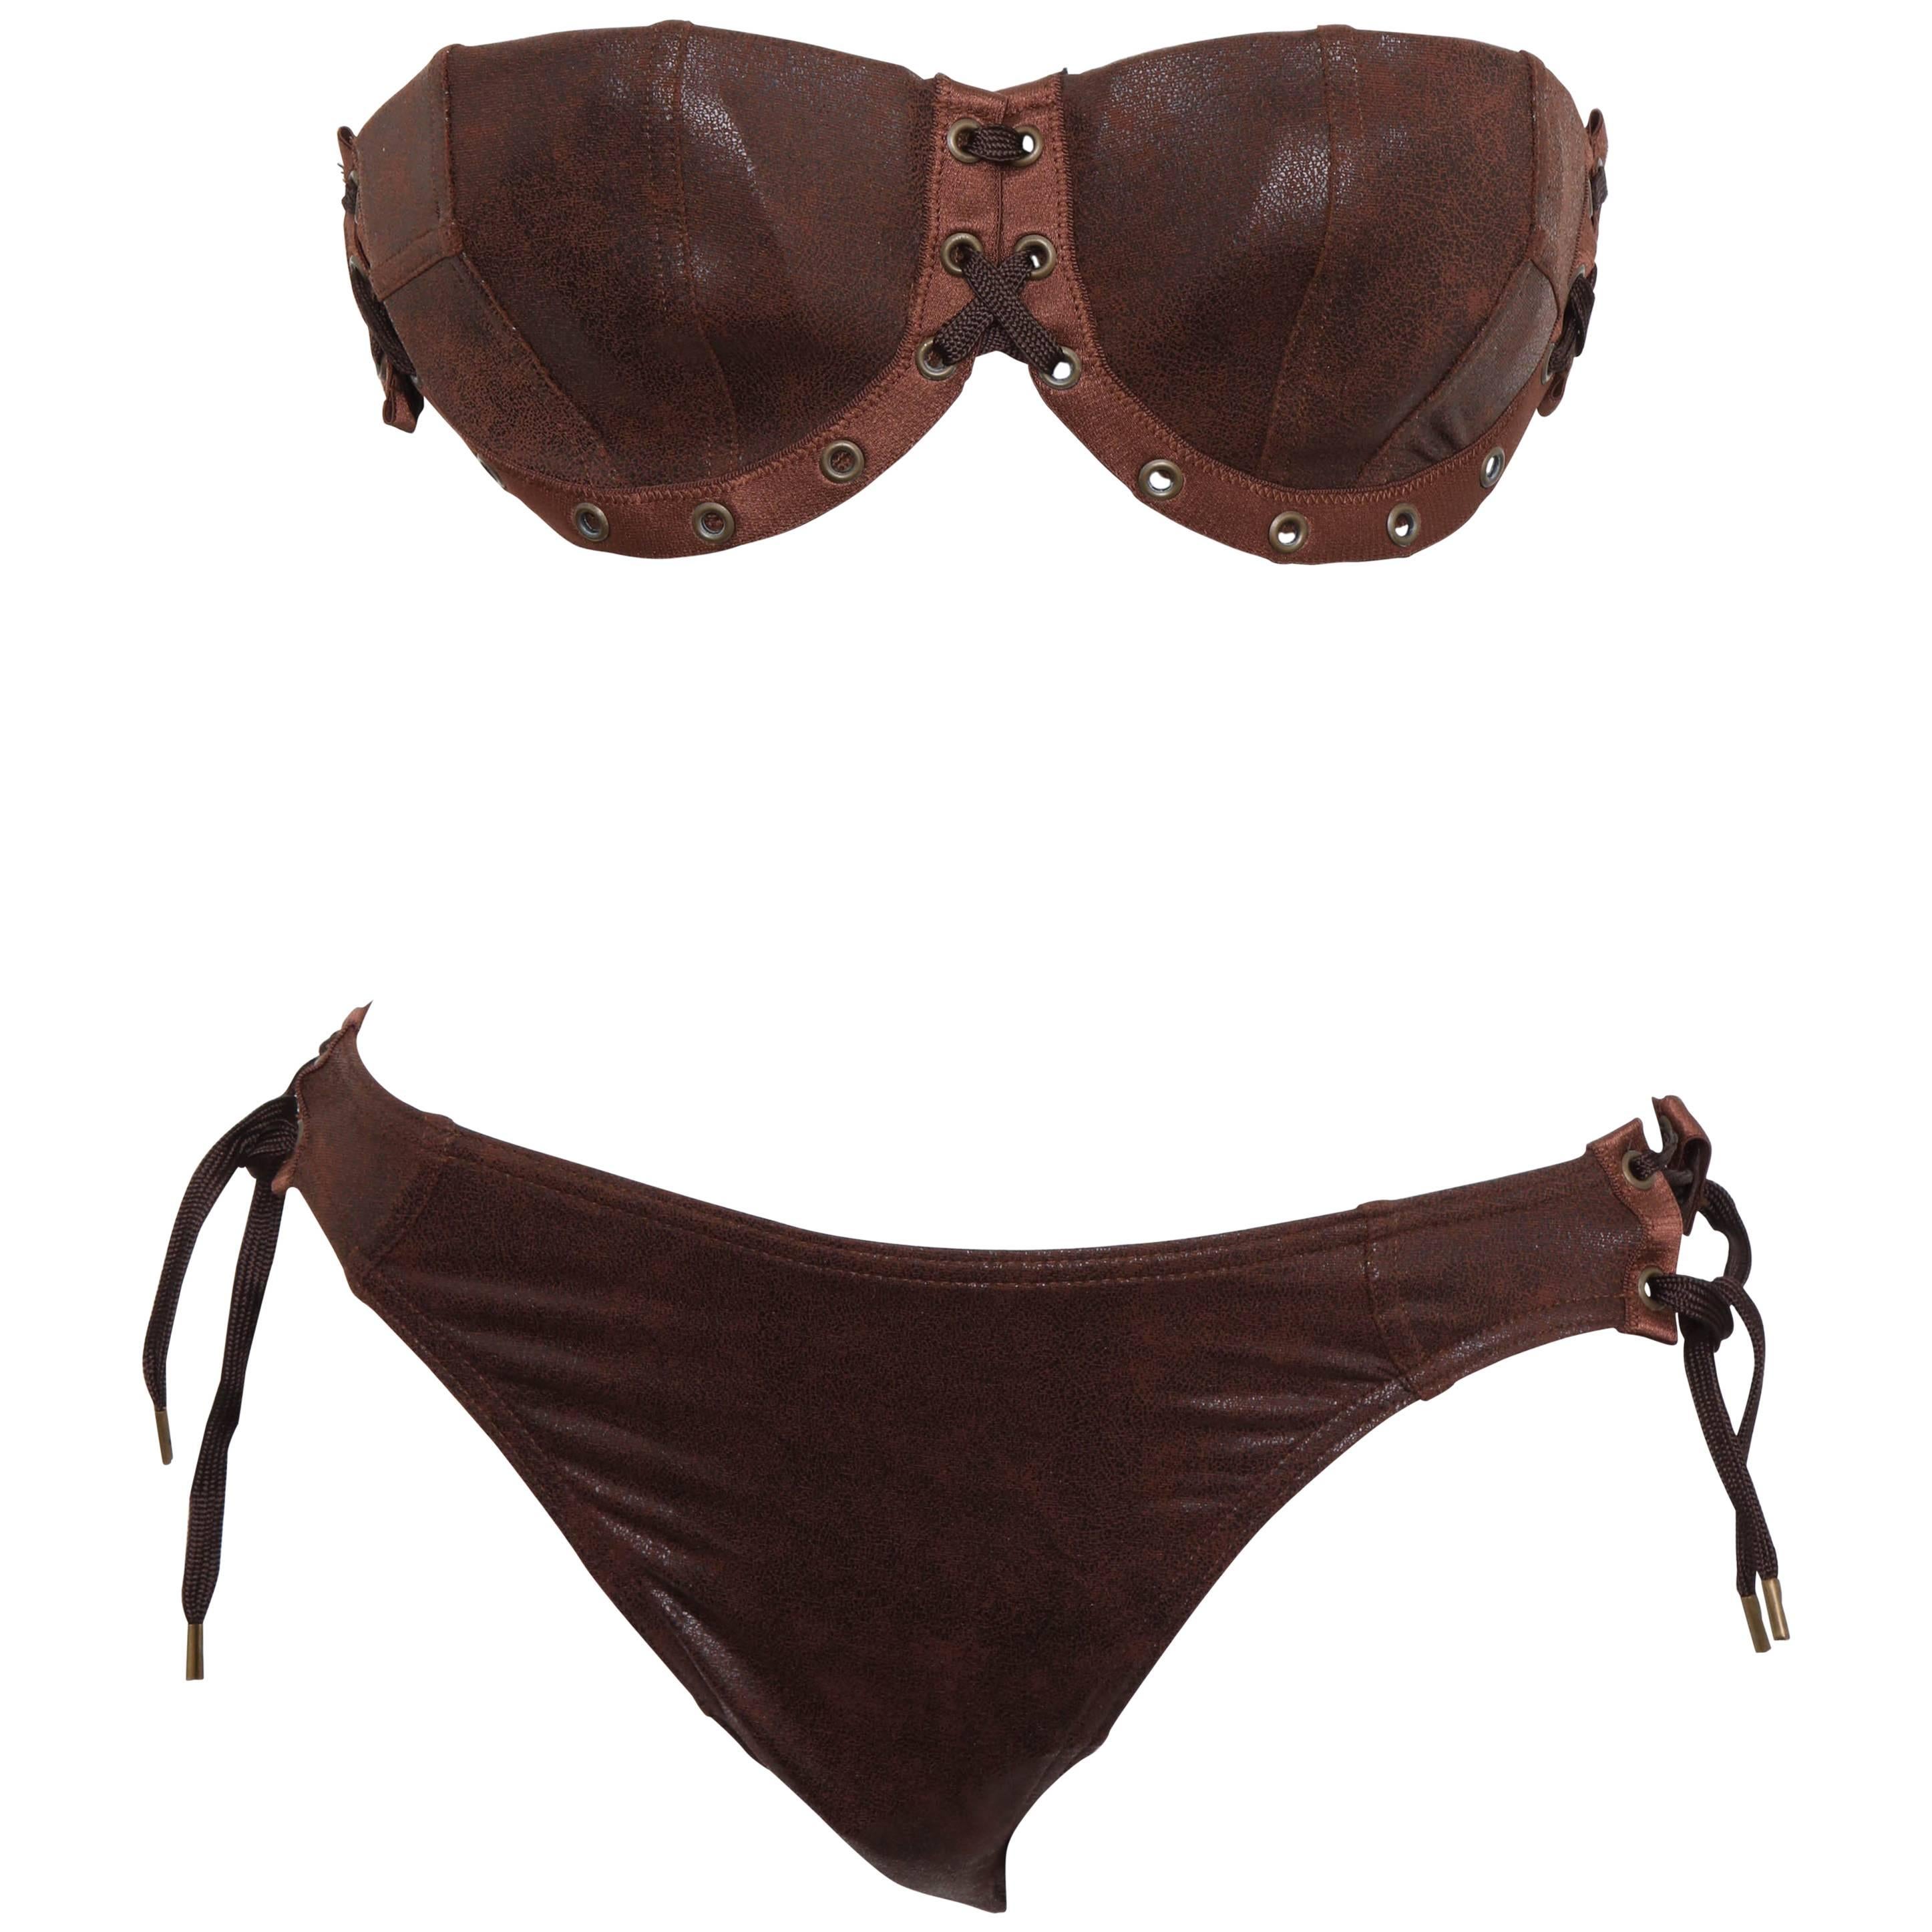 John Galliano for Christian Dior Brown Faux Leather Bikini